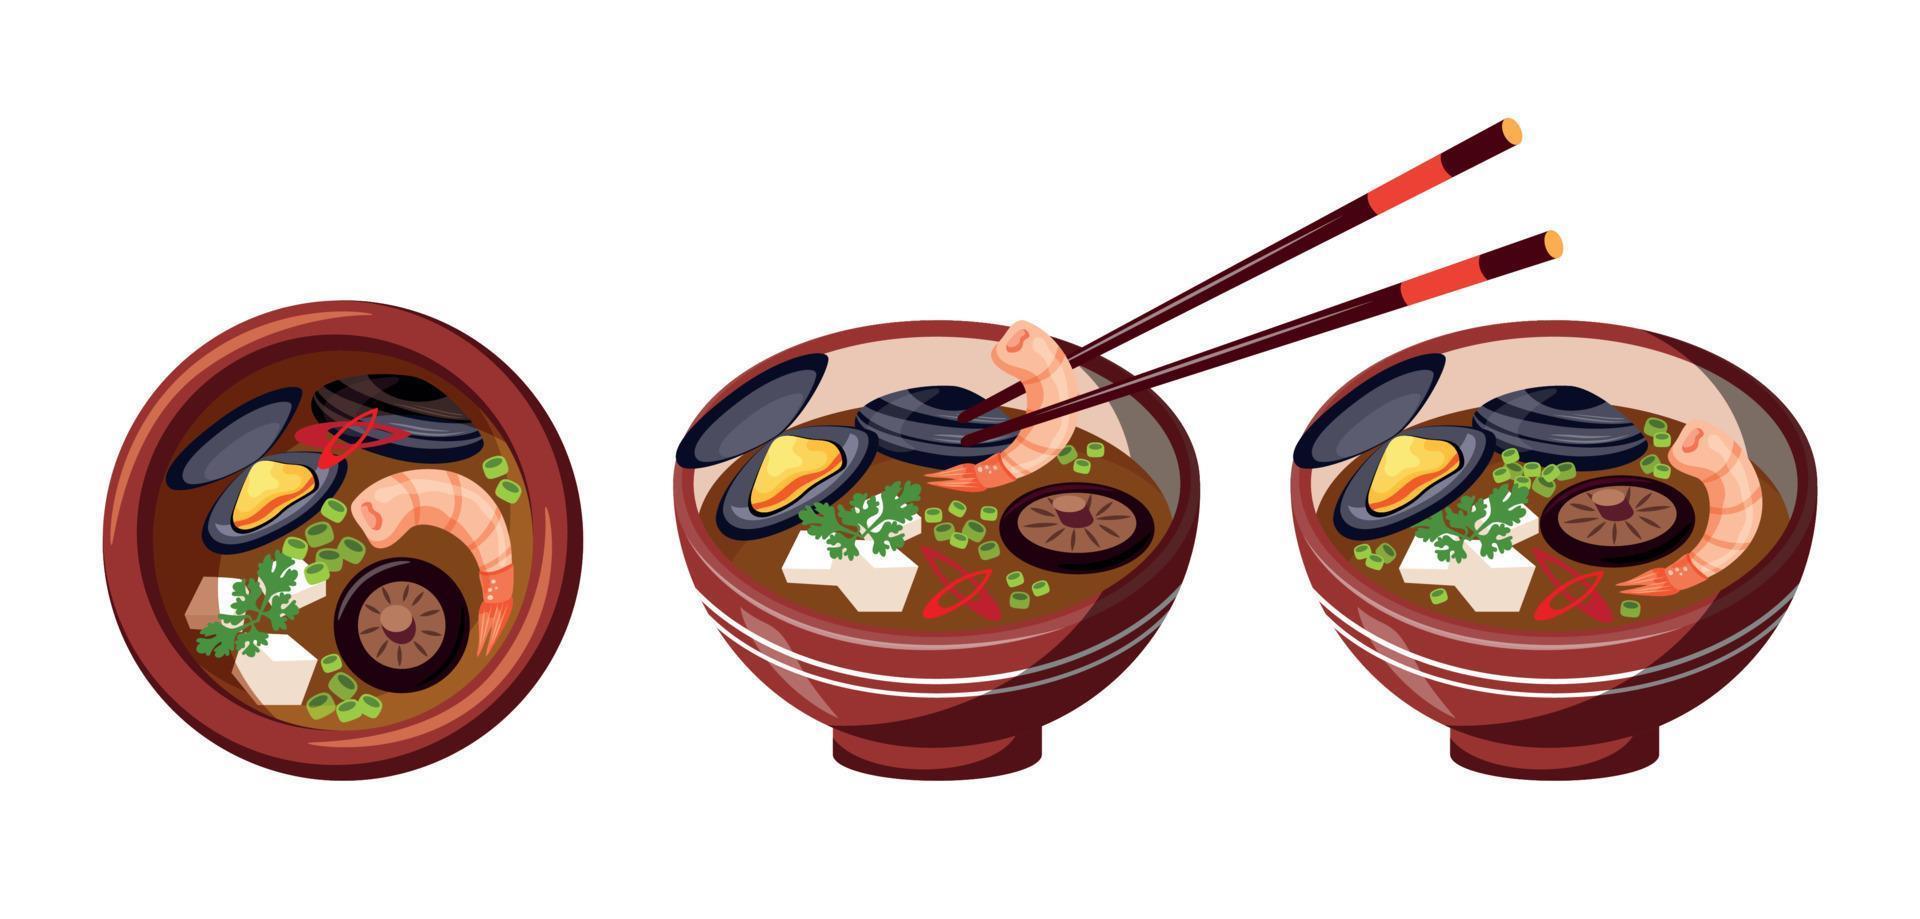 Suppe der asiatischen Küche mit Muscheln, Shiitake-Pilzen und Garnelen. traditionelles Fischgericht. 3 Teller mit Essen, Nahaufnahme vektor